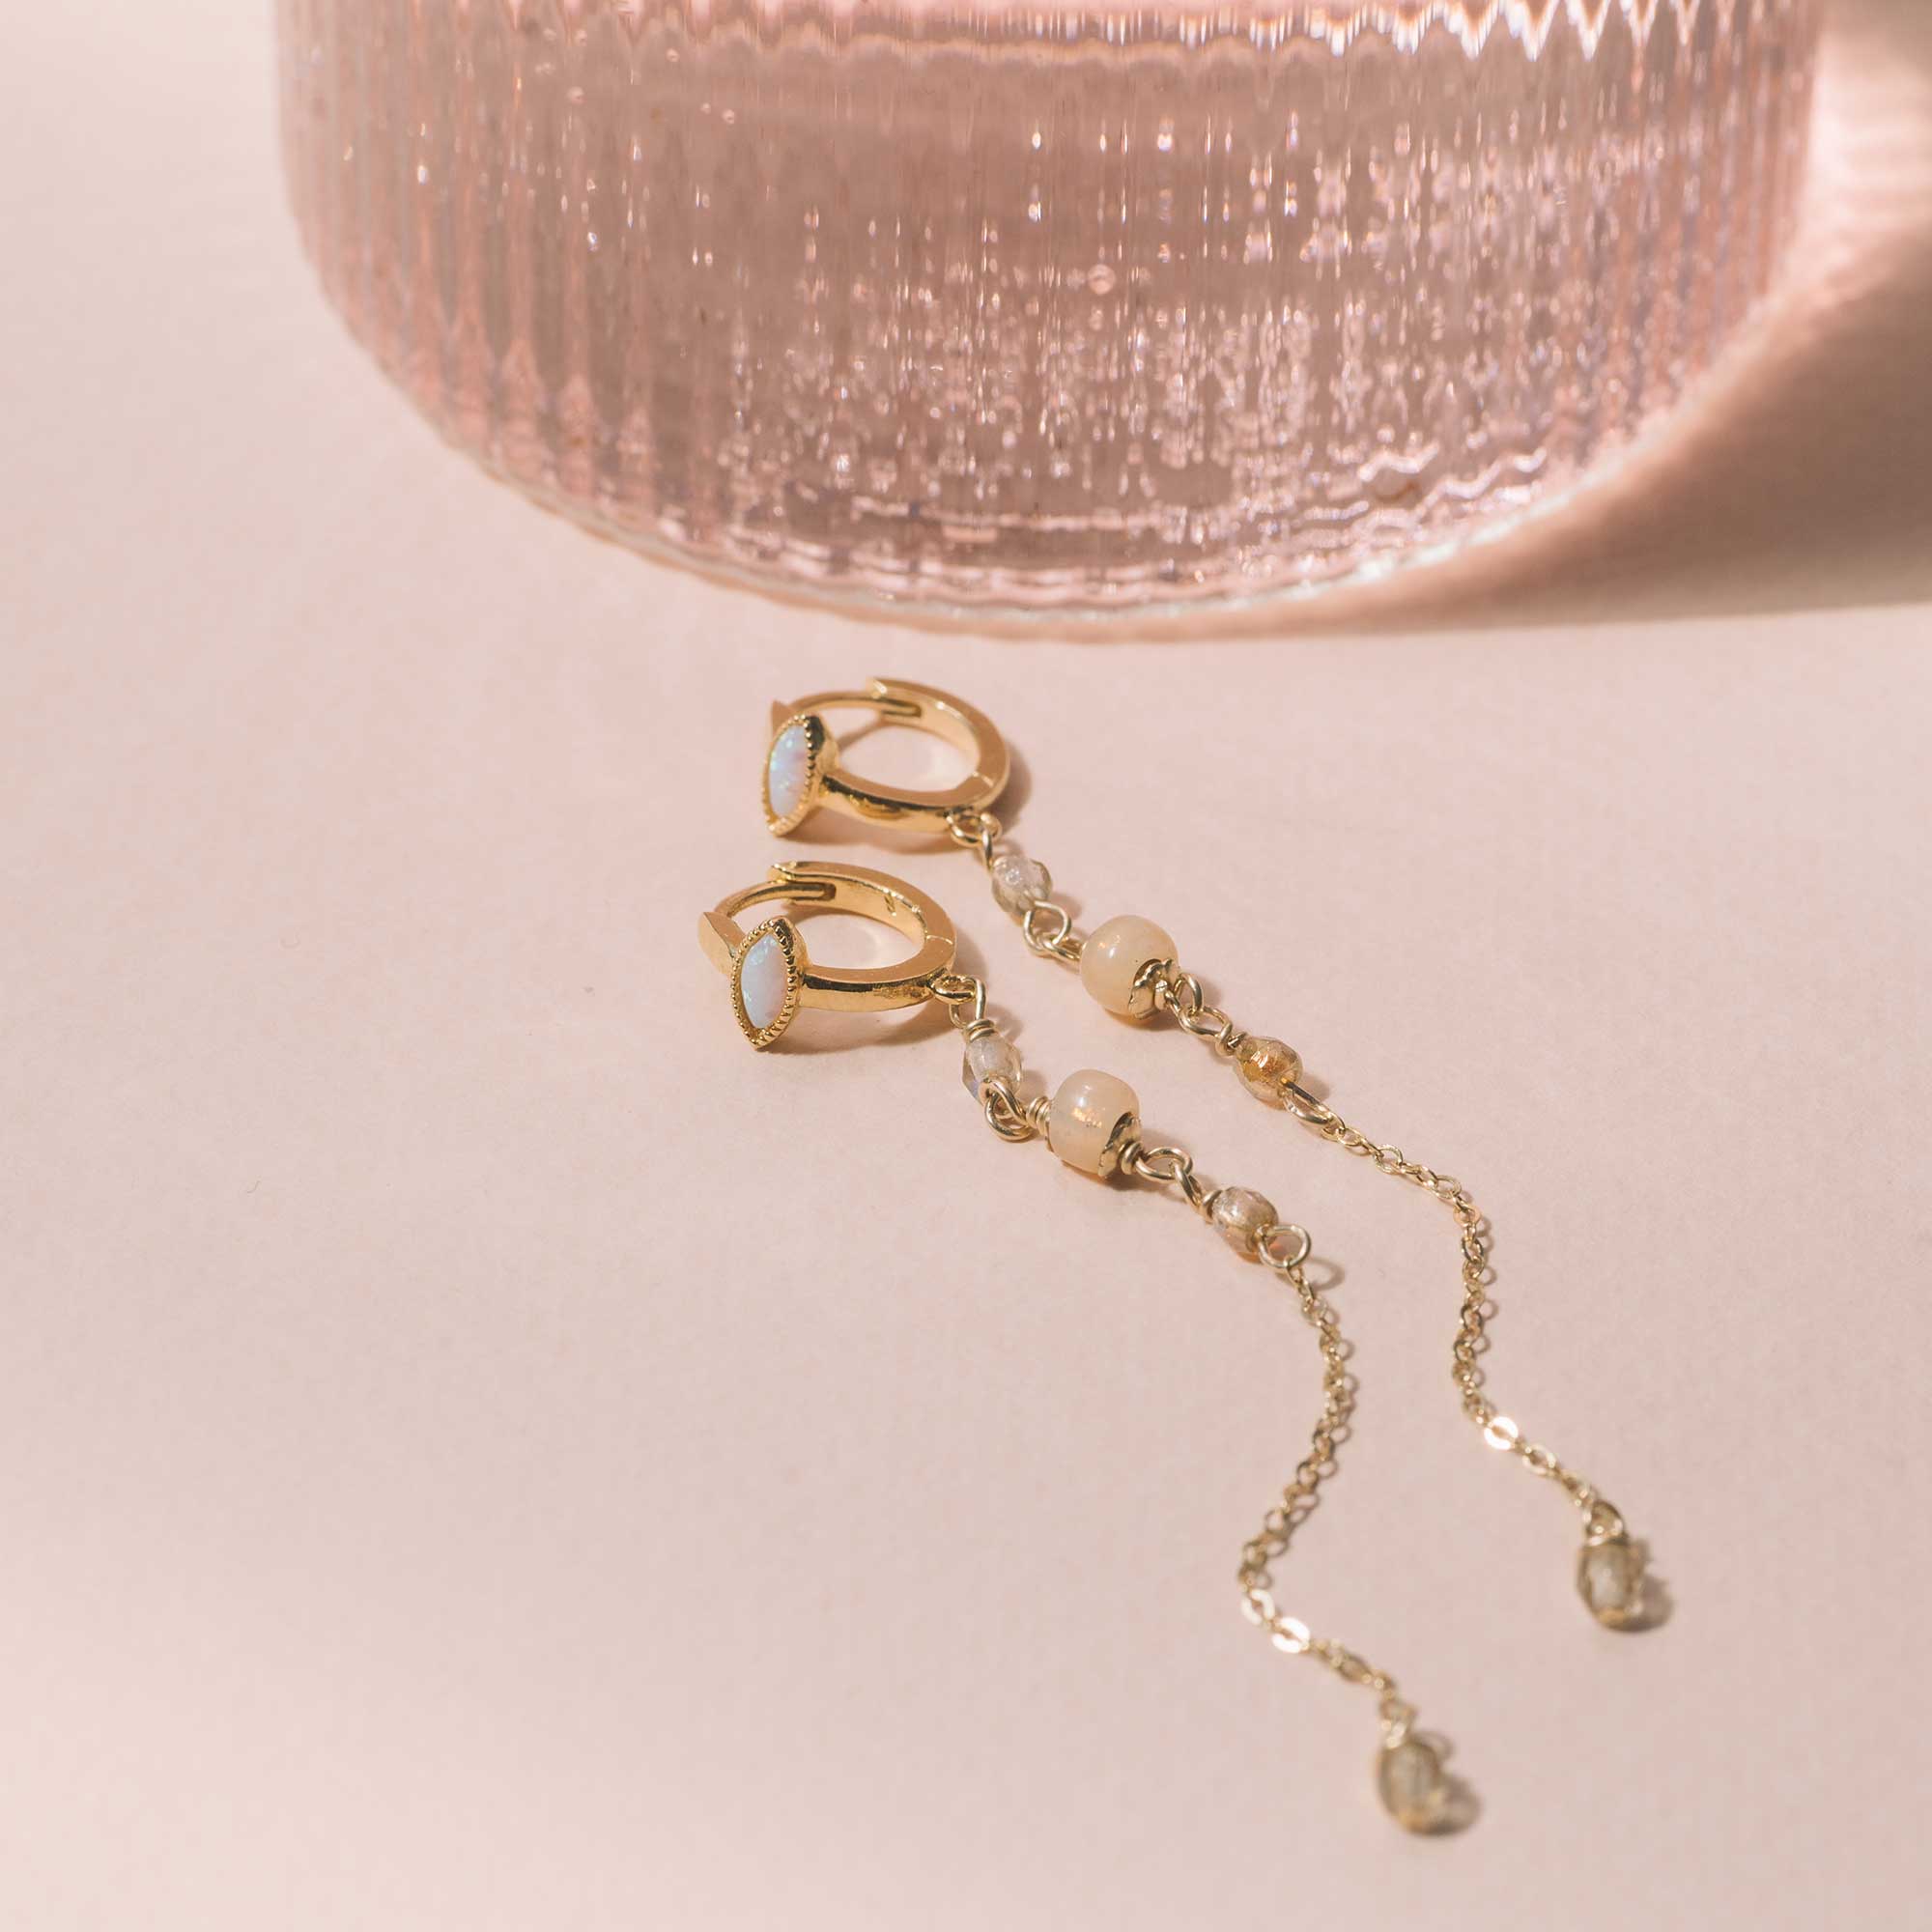 sandrine devost jewelry long earrings opal evil eye gold filled chain